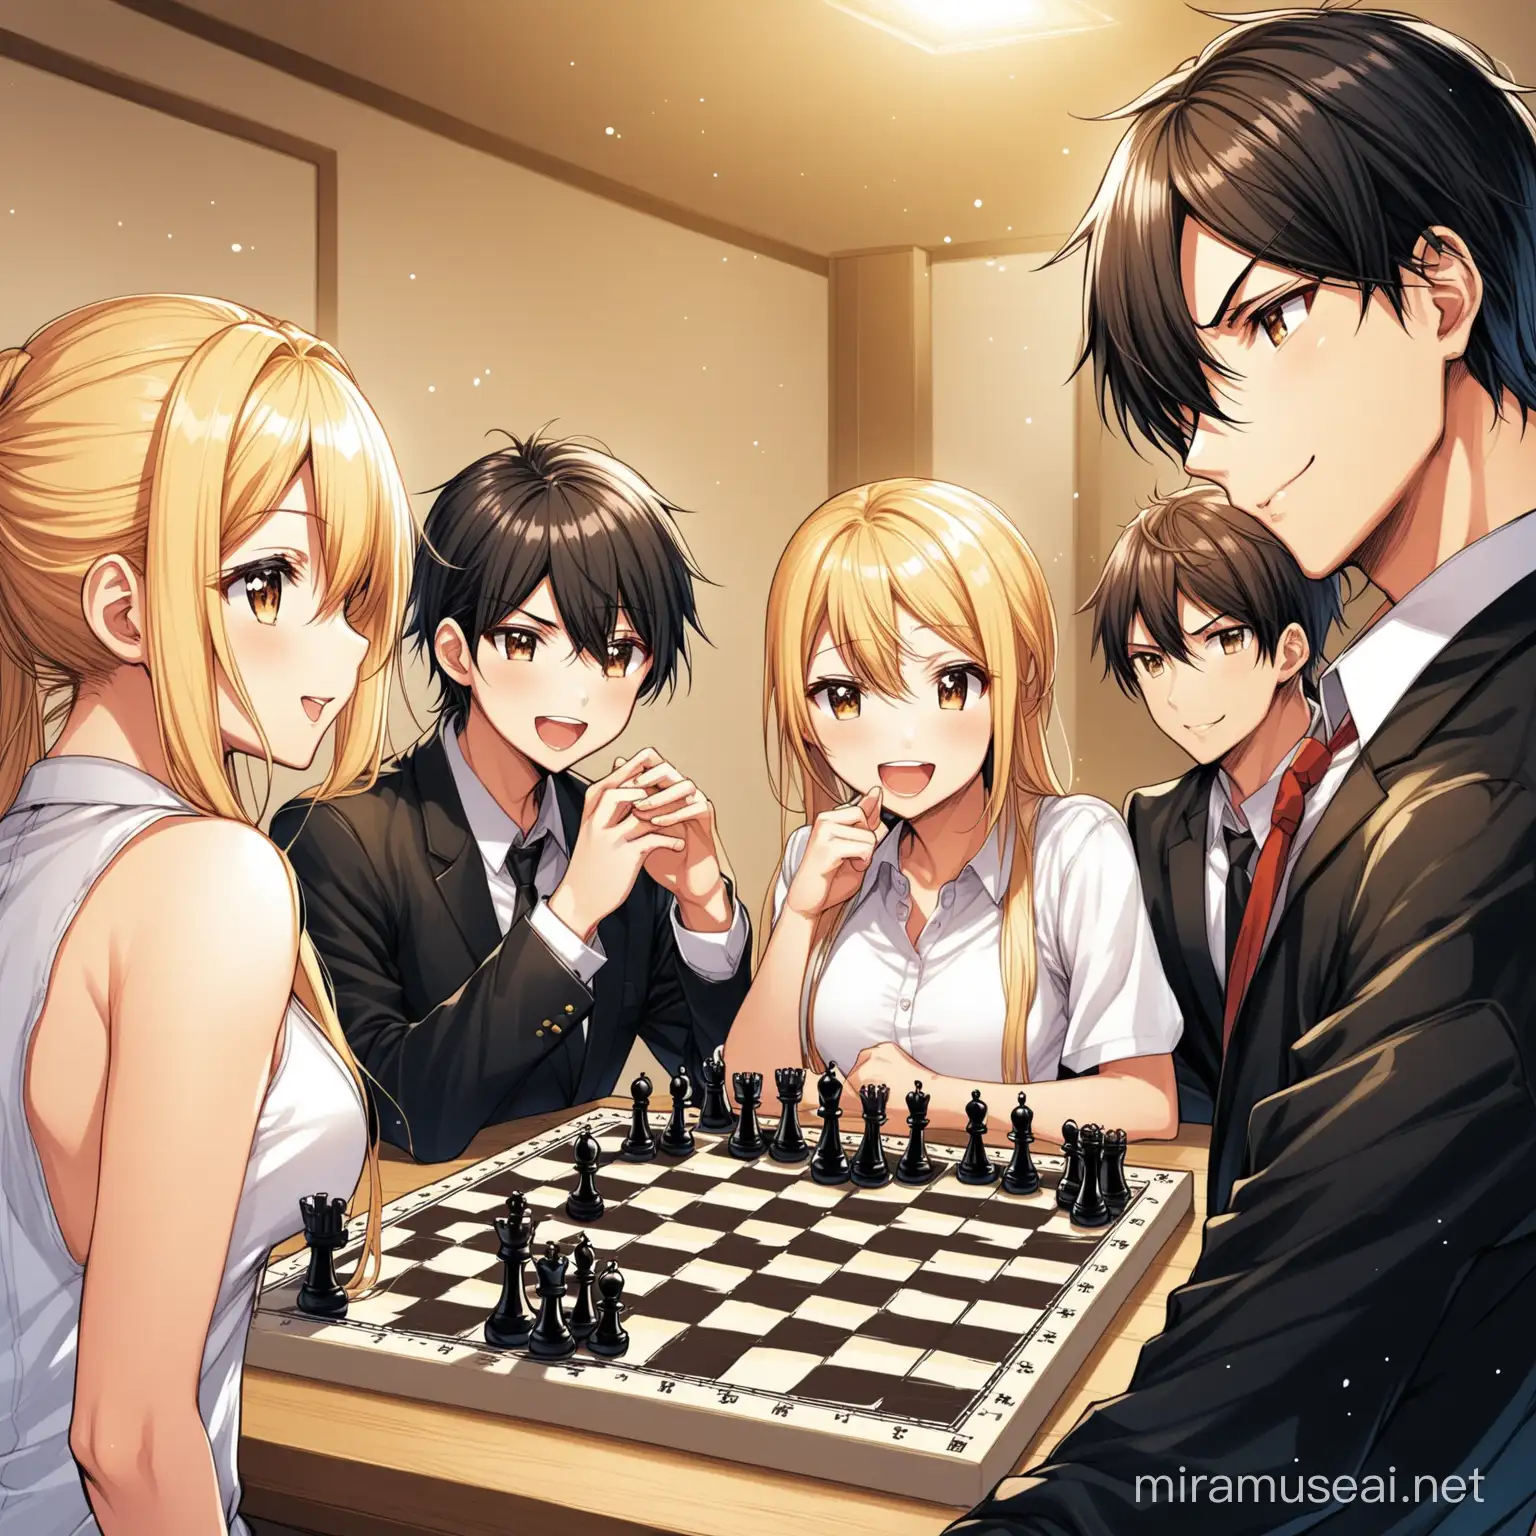 Joyful Manga Scene Two Girls and Three Boys Playing Chess